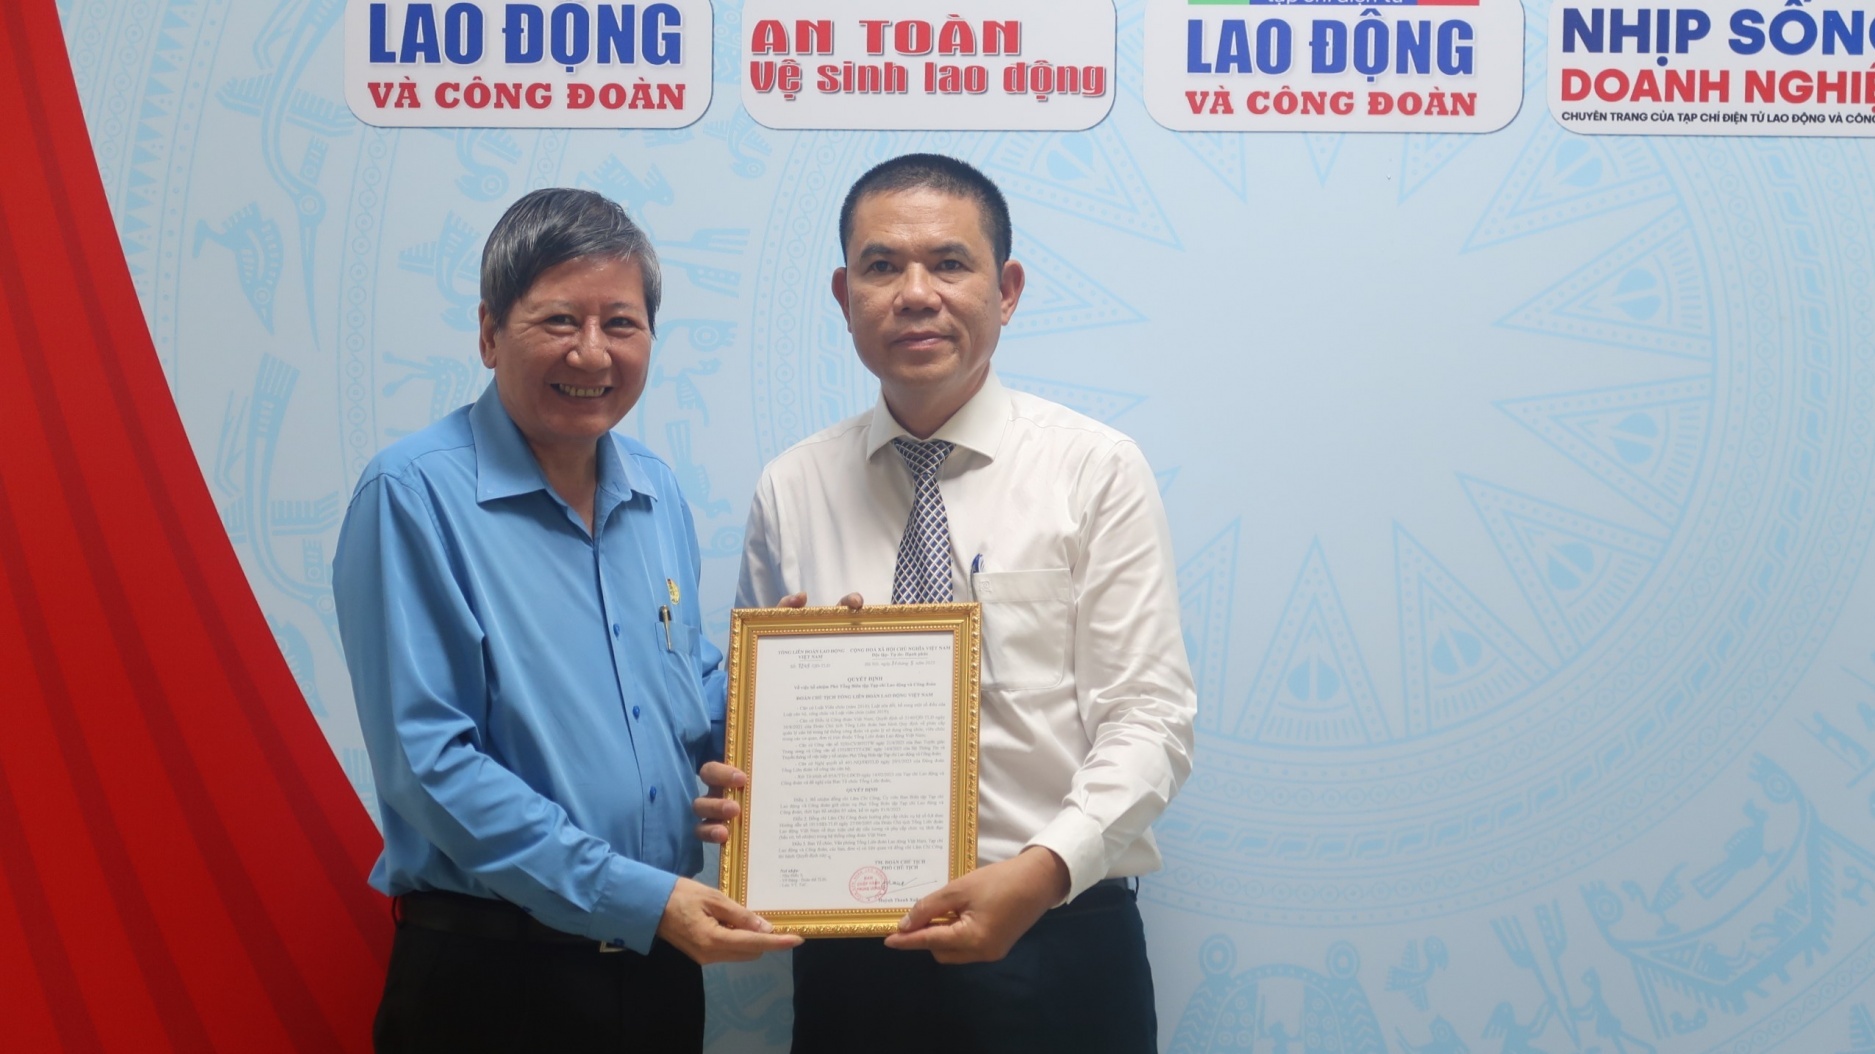 Nhà báo Lâm Chí Công được bổ nhiệm Phó Tổng biên tập Tạp chí Lao động và Công đoàn